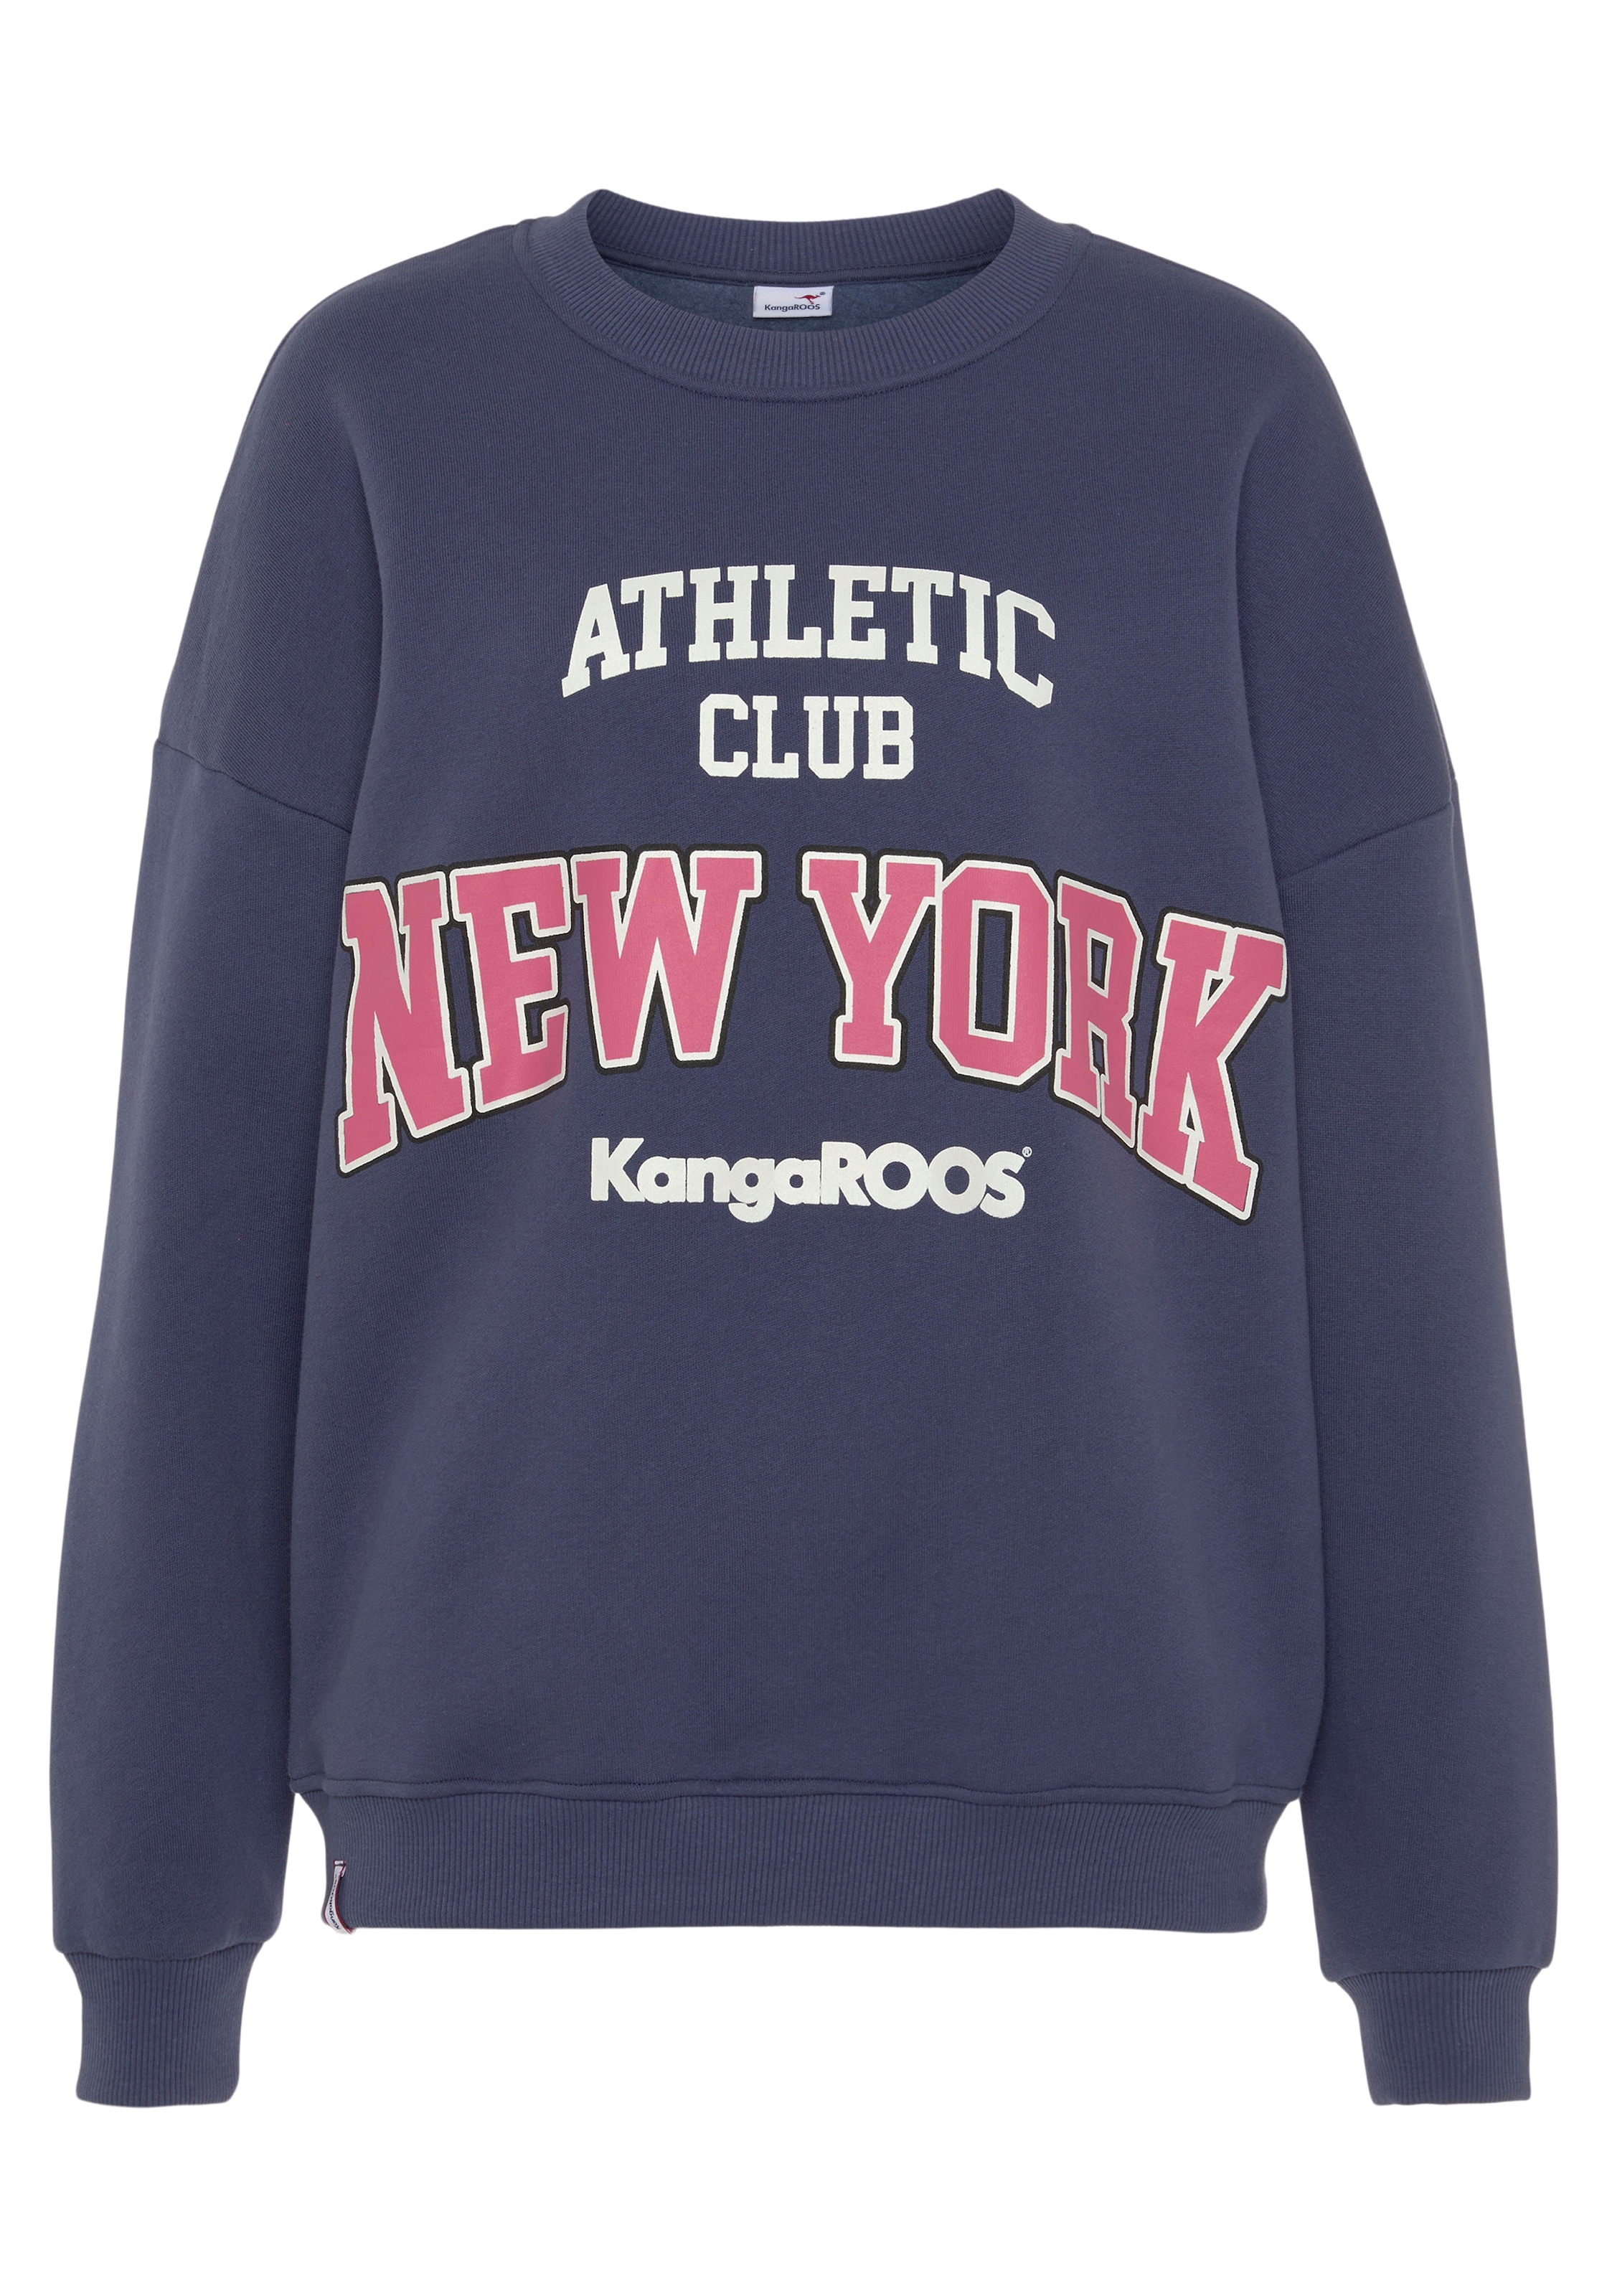 KangaROOS Sweatshirt, NEUE College-Style shoppen online bei mit im KOLLEKTION Logodruck Schweiz - Jelmoli-Versand grossem